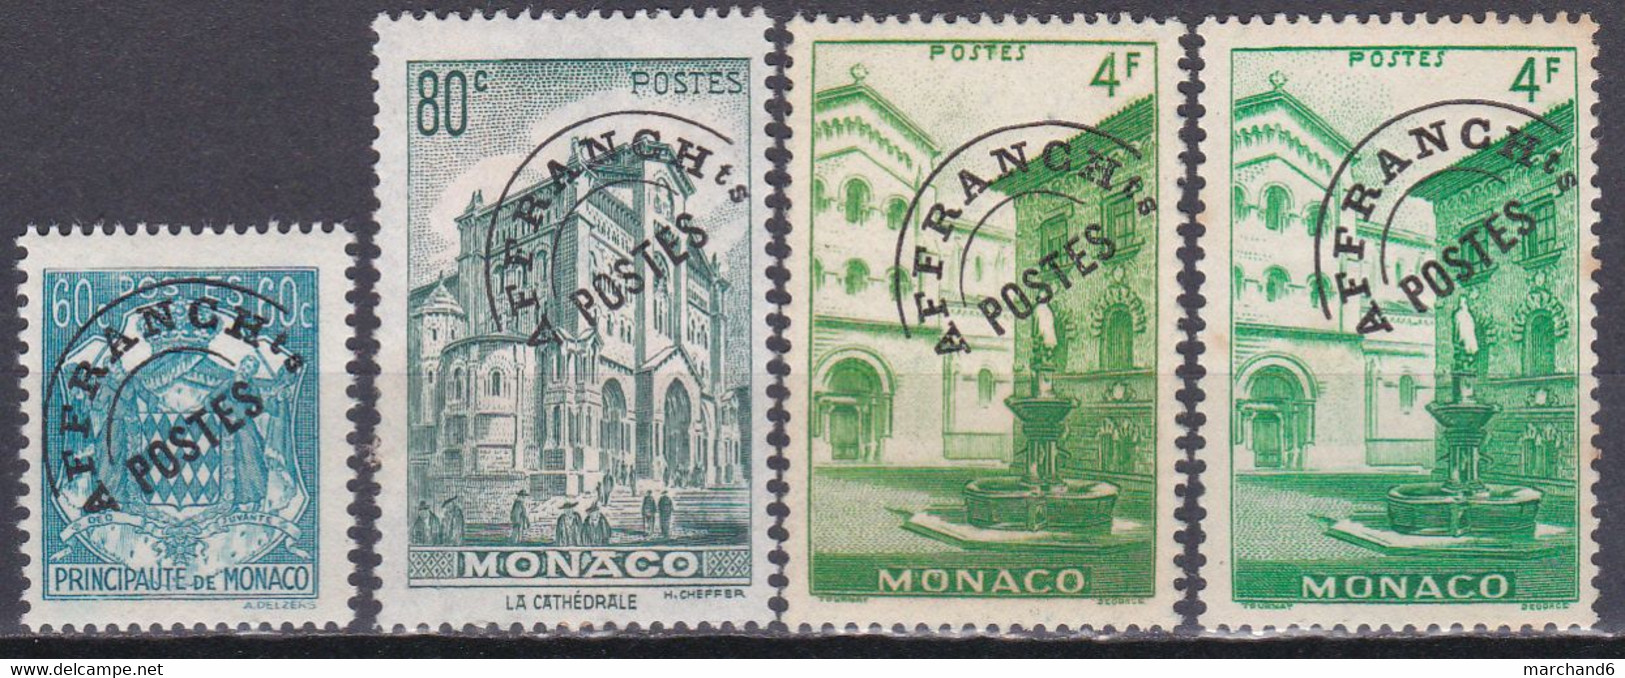 Monaco Timbres Poste Suchargés 1943-51 Préoblitérés N°1-2-3-3a Neuf*charnière - Preobliterati